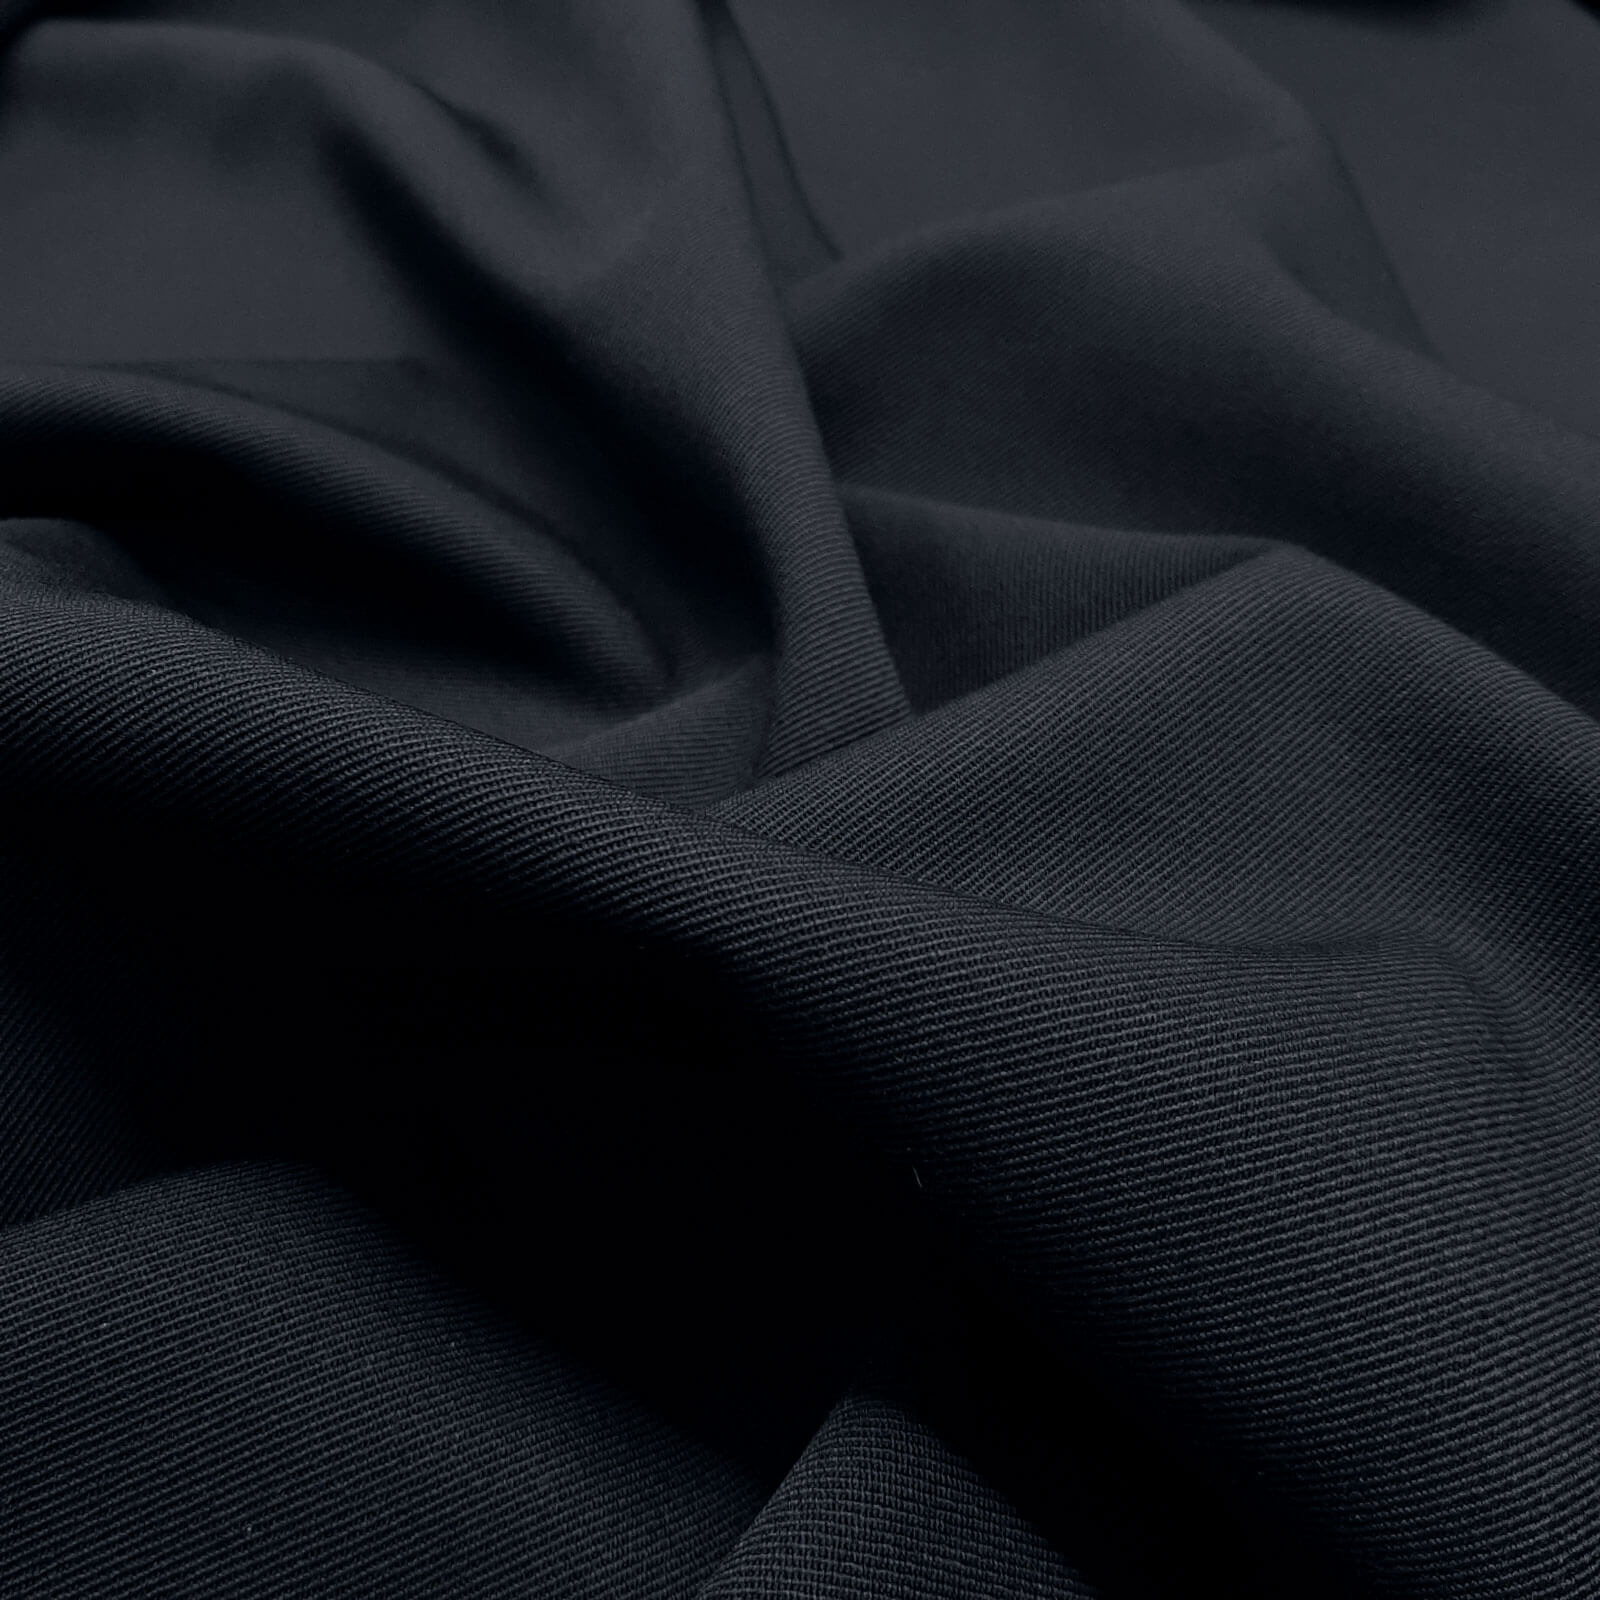 Franziska - paño de lana 100% lana virgen / paño de uniforme – Azul marino oscuro